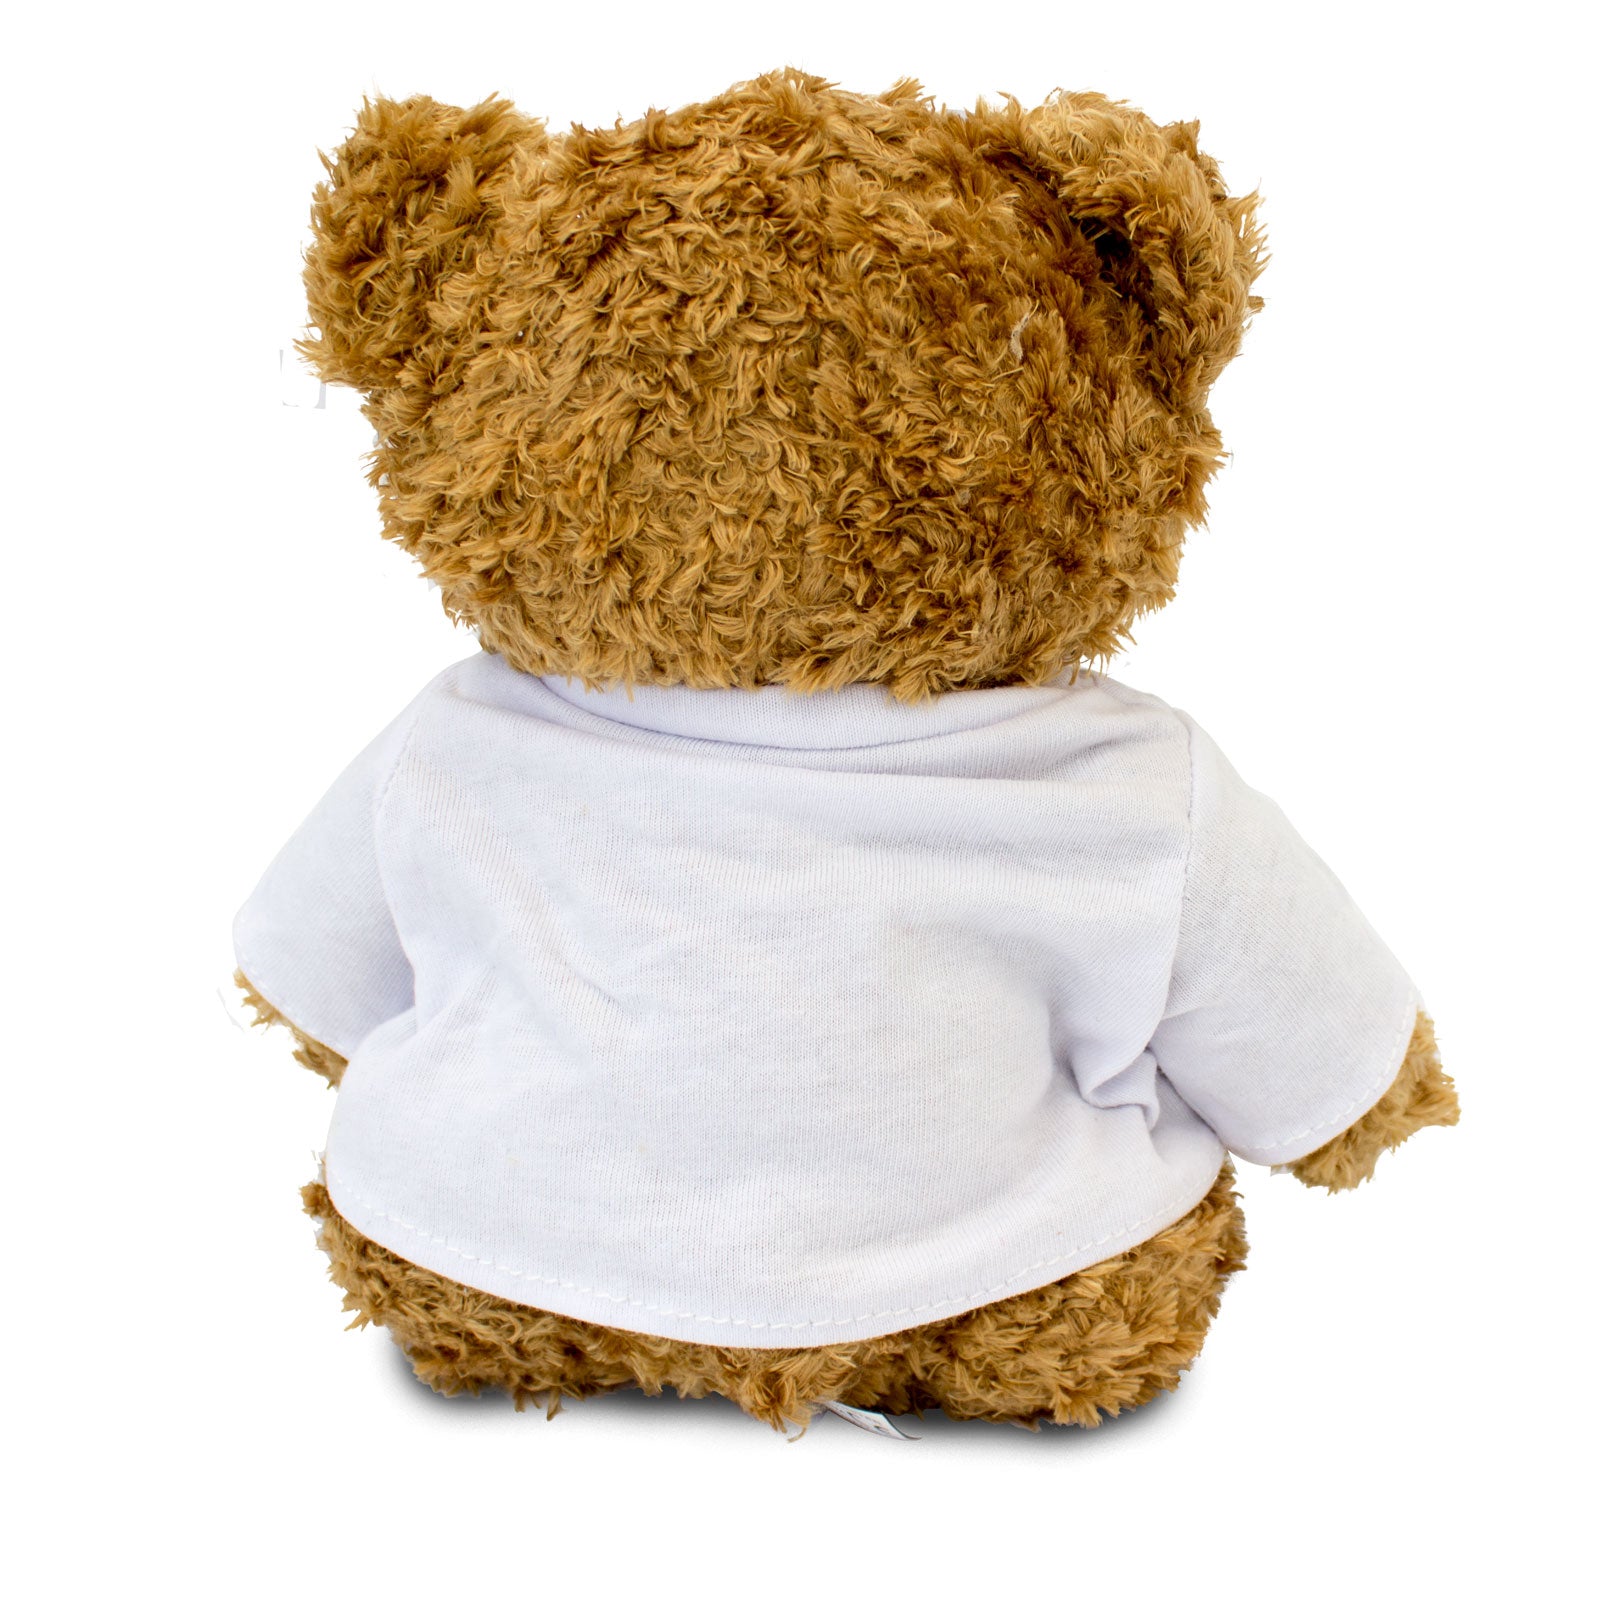 Get Well Soon Dick - Teddy Bear